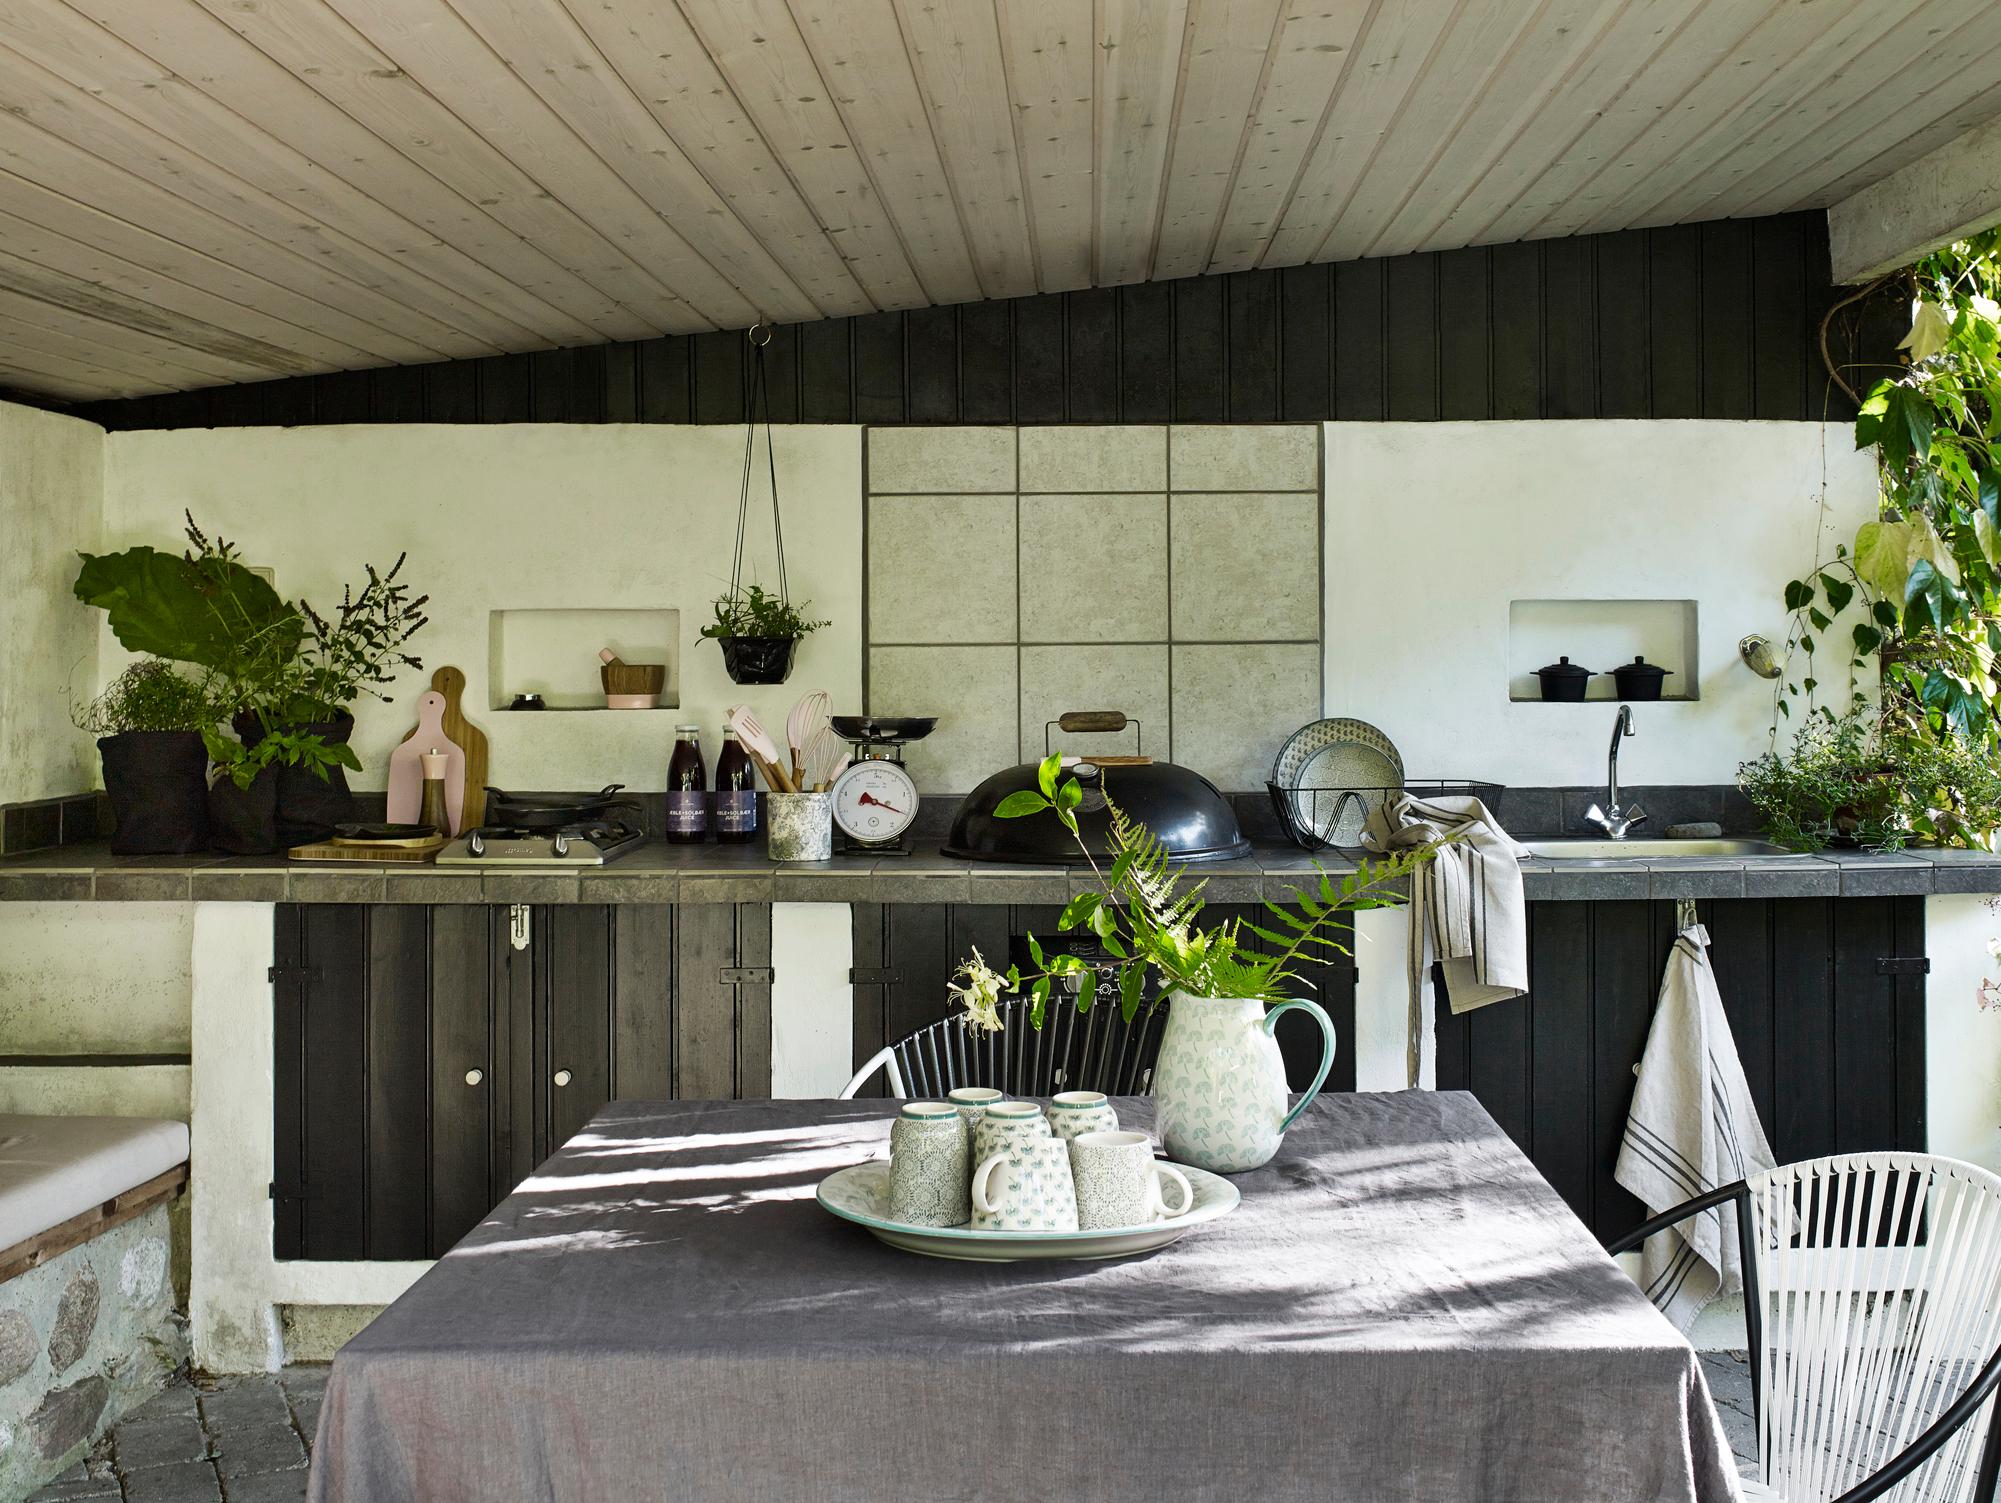 Küche in Naturtönen gestalten #stuhl #küche #holzdecke #küchenschrank #weißerstuhl #tisch ©Nordal